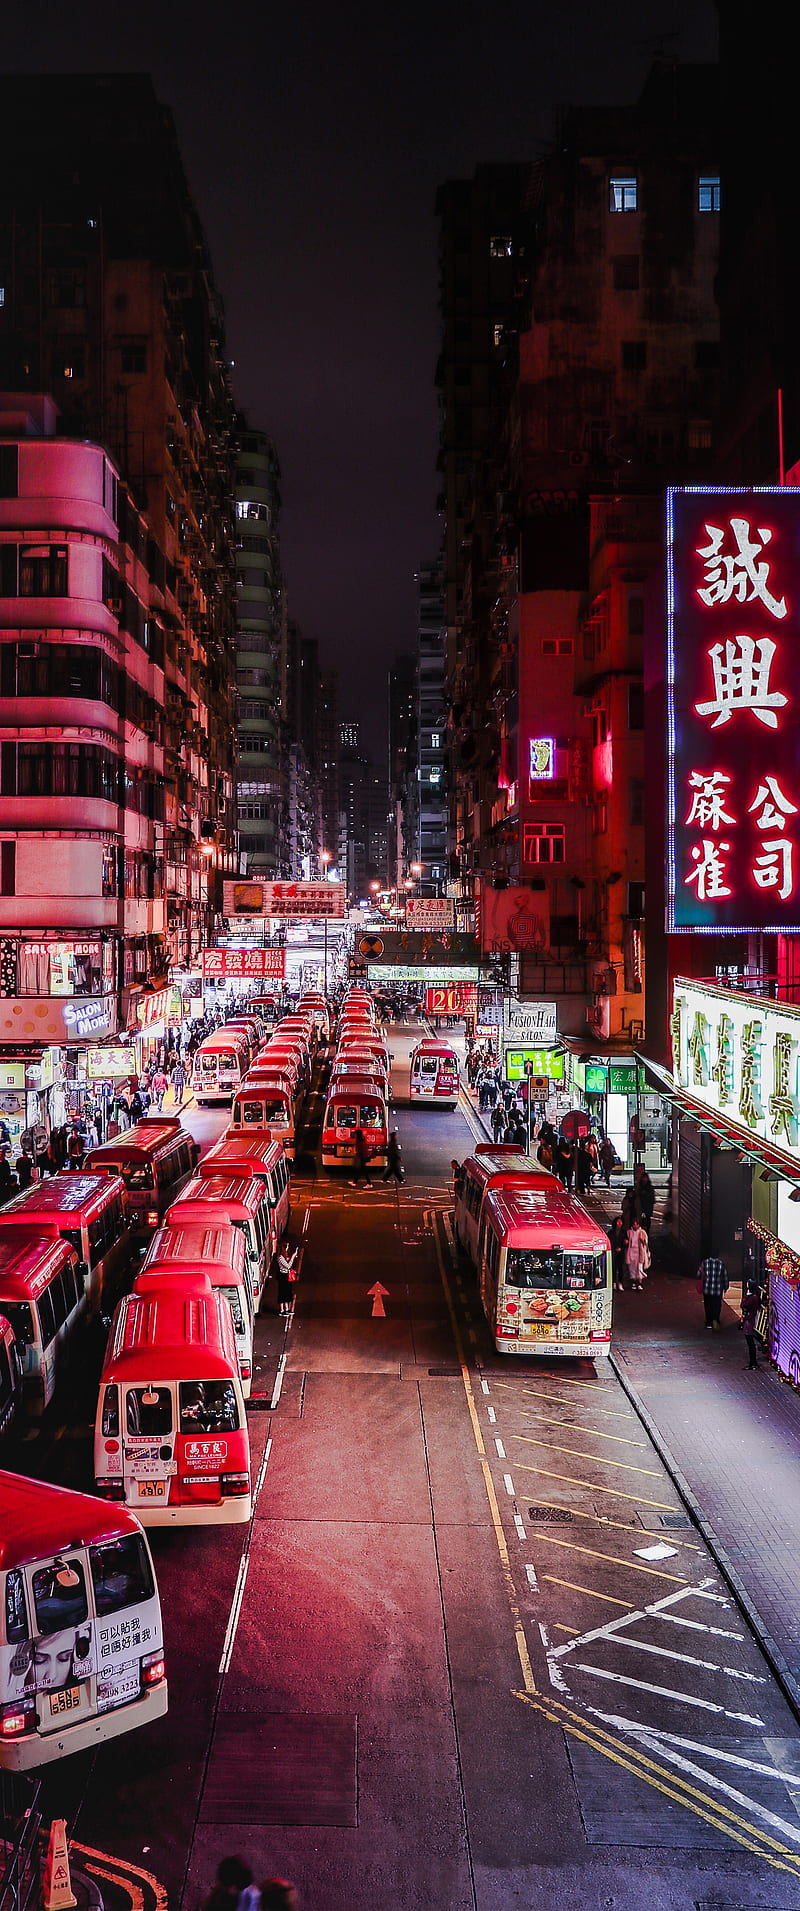 Living In A Box Condos Hong Kong China UHD 4K Wallpaper | Pixelz